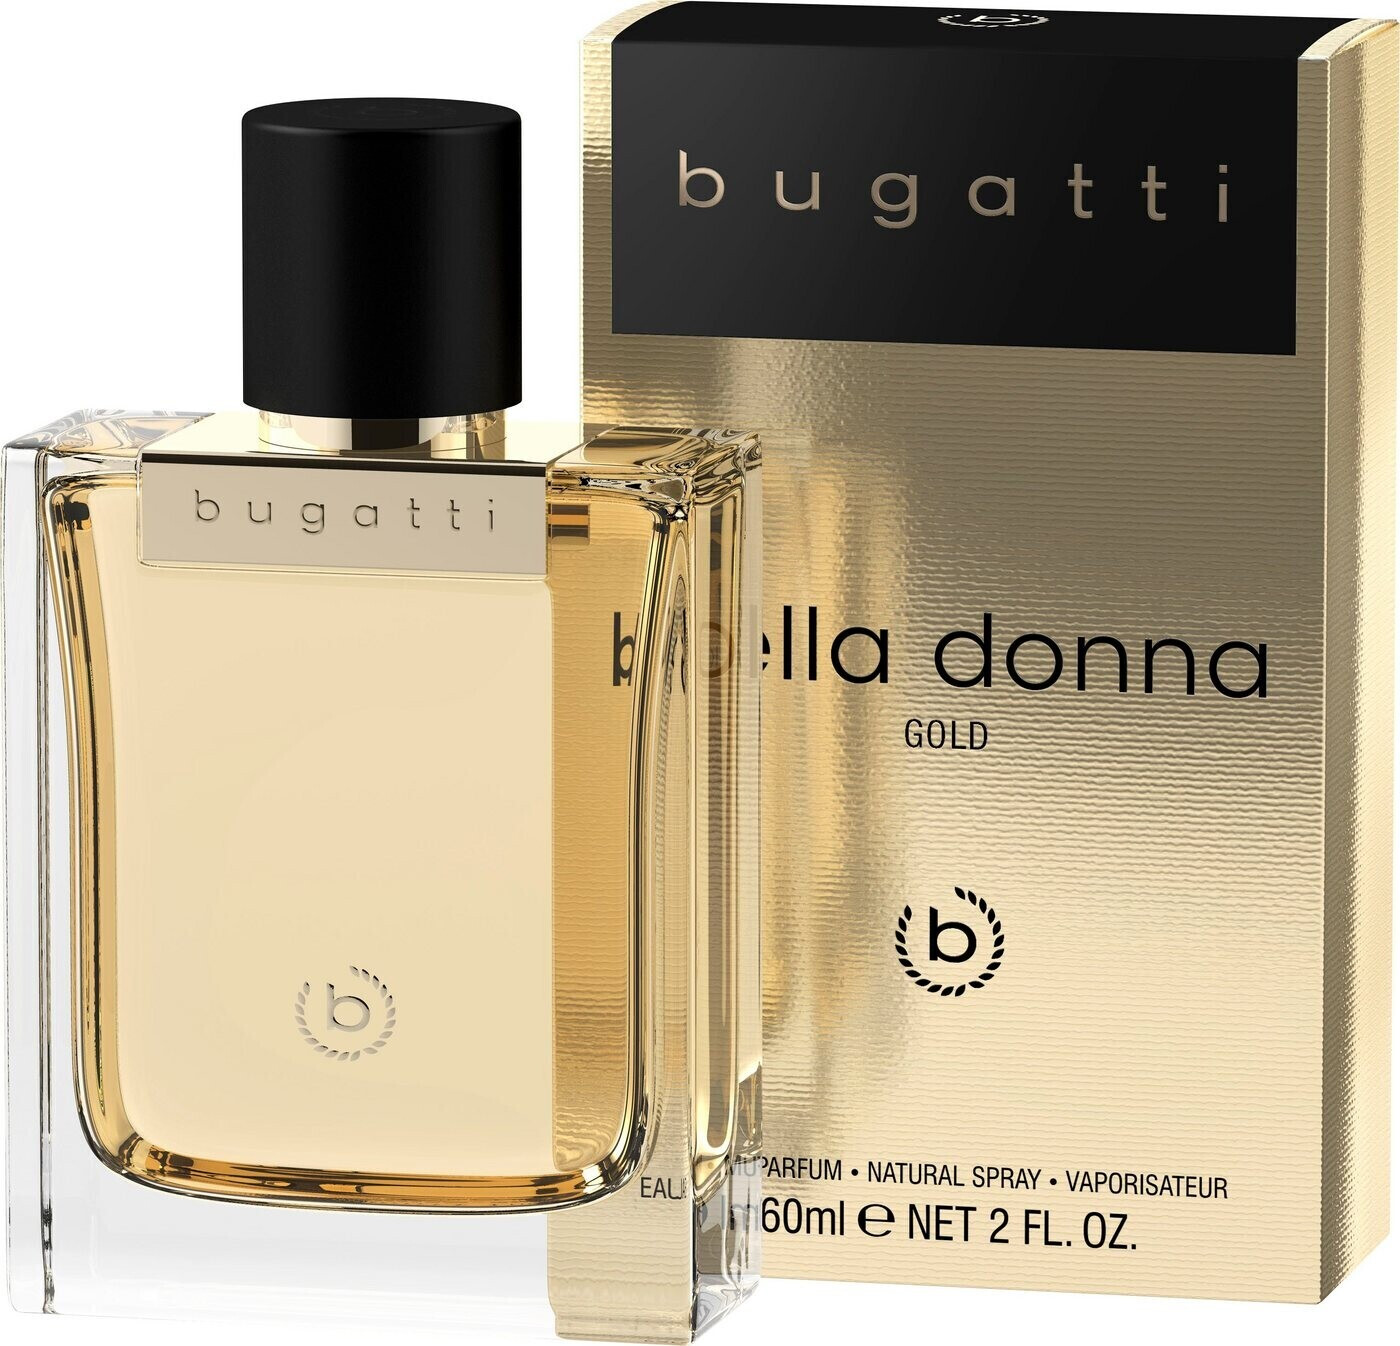 Explosiv beliebt Bugatti Bella Donna | Preisvergleich ab (60ml) Gold Parfum € bei de 16,99 Eau